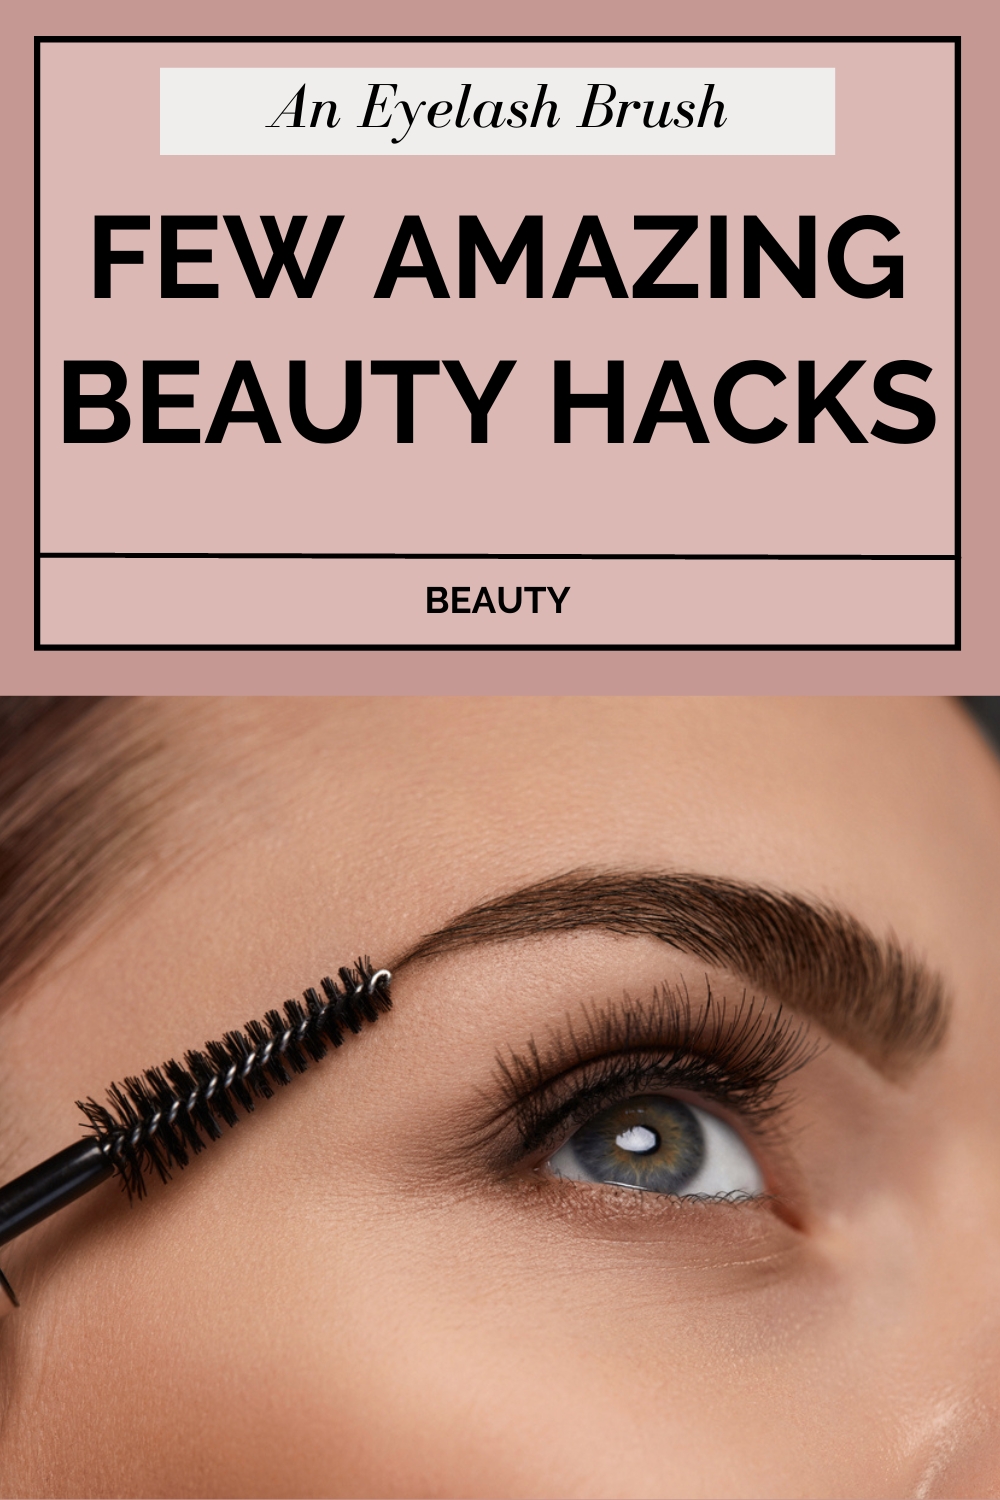 An Eyelash Brush Few Amazing Beauty Hacks